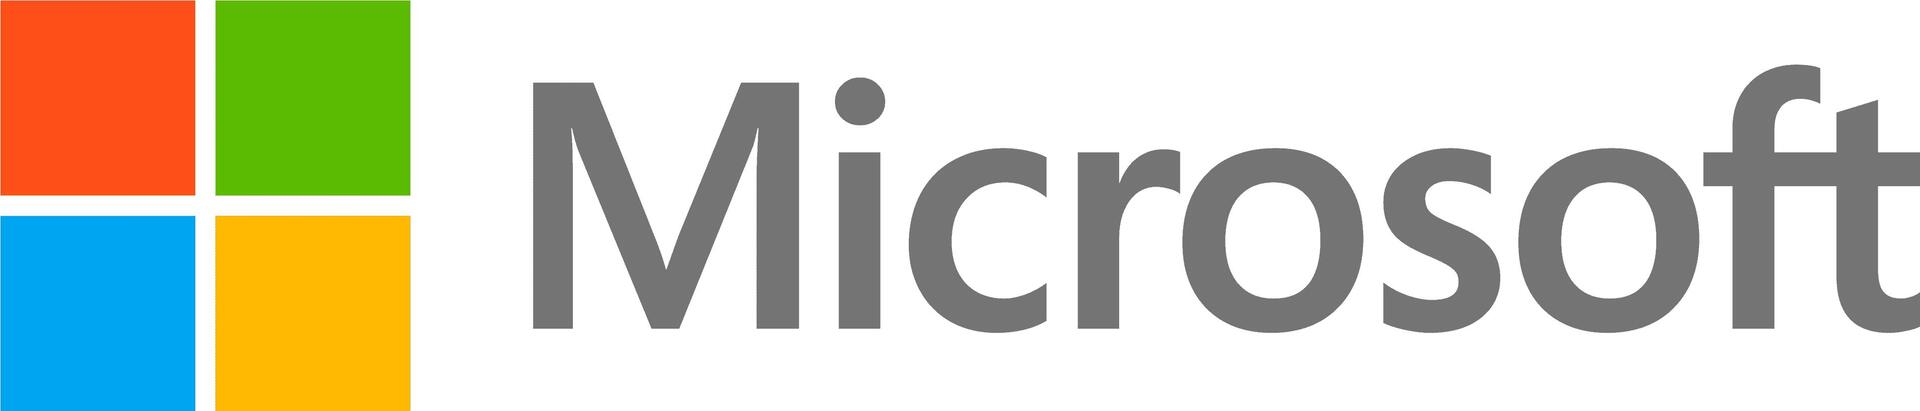 Microsoft DG7GMGF0D7D3.0002 Software-Lizenz/-Upgrade 1 Lizenz(en) (DG7GMGF0D7D3.0002)